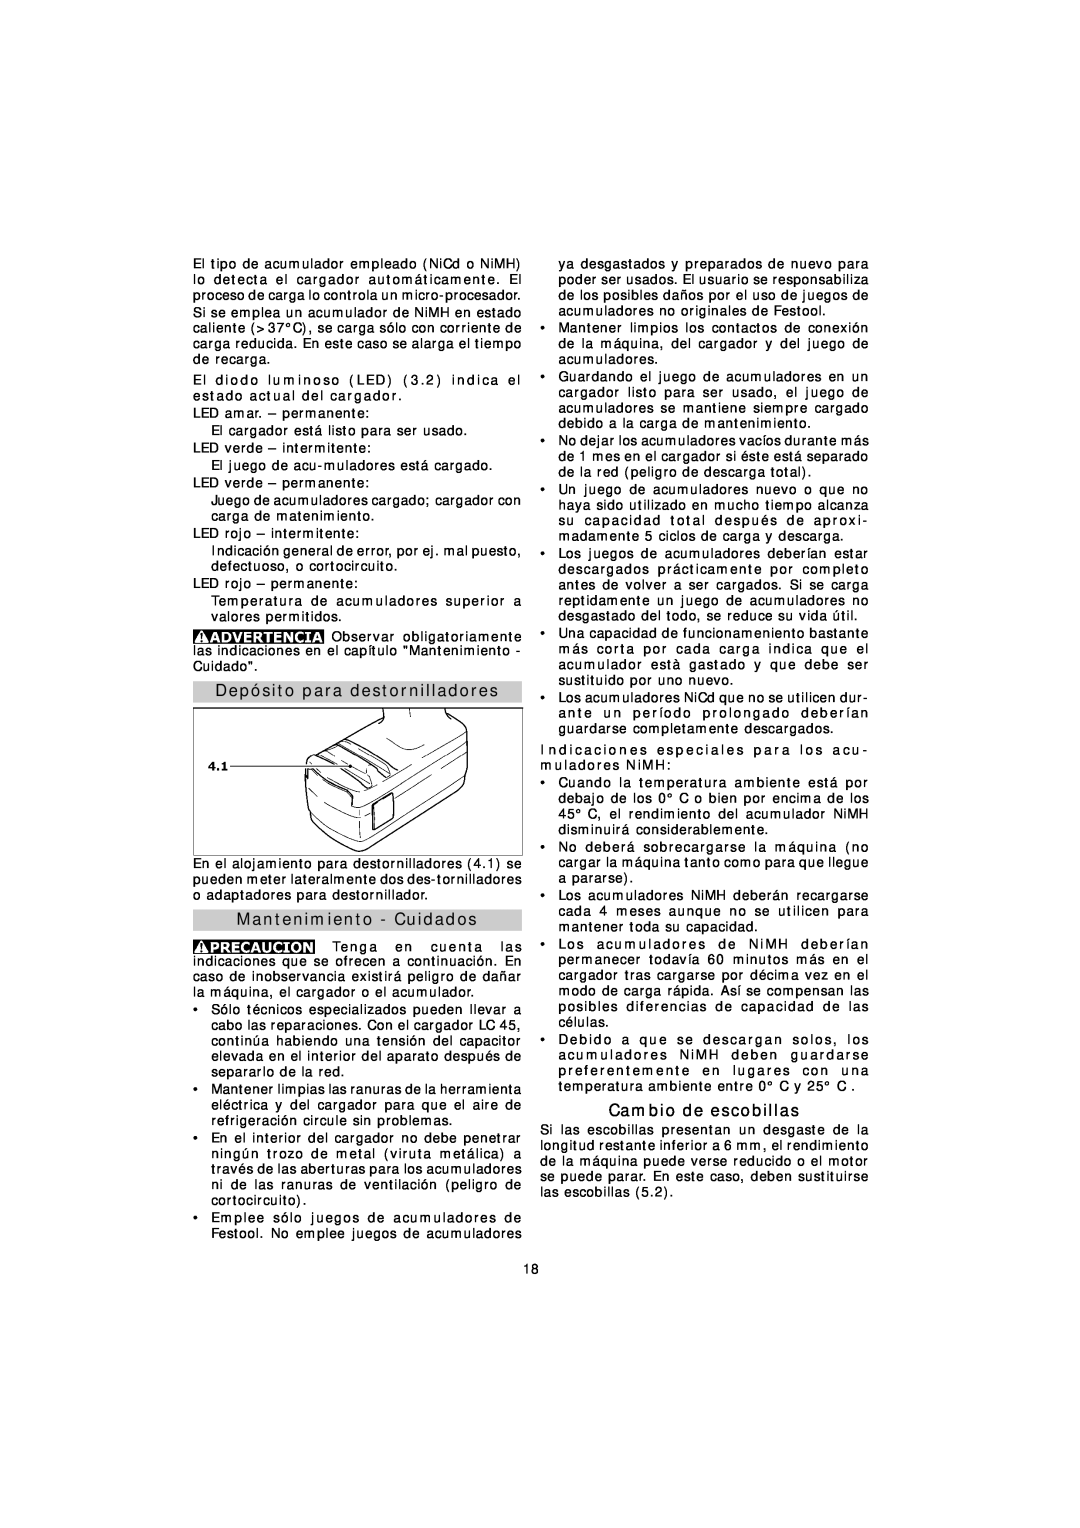 Festool TDK 15.6, TDK 12 instruction manual Depósito para destornilladores, Mantenimiento - Cuidados, Cambio de escobillas 